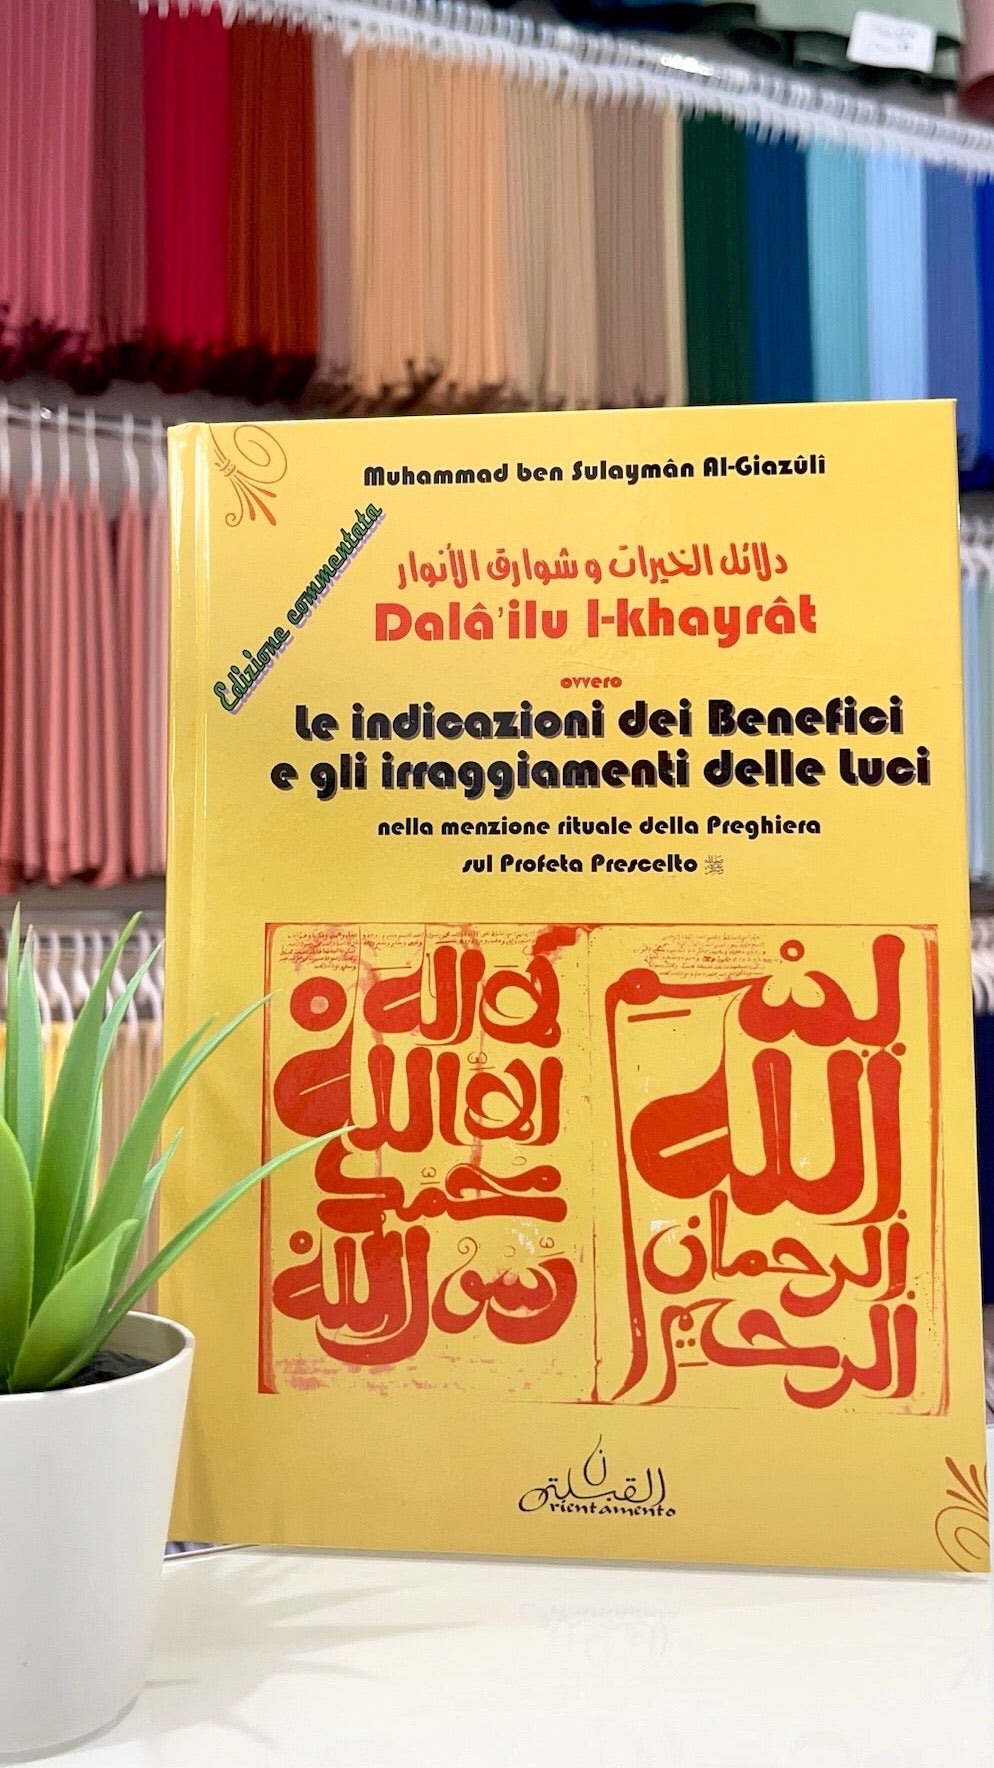 Le indicazioni dei benefici e gli irraggiamenti delle luci (Dala'ilu l-khayrat) - Hijab Paradise  - muhammad ben sulayman al giazulo- nella menzione rituale della preghiera sul profeta prescelto